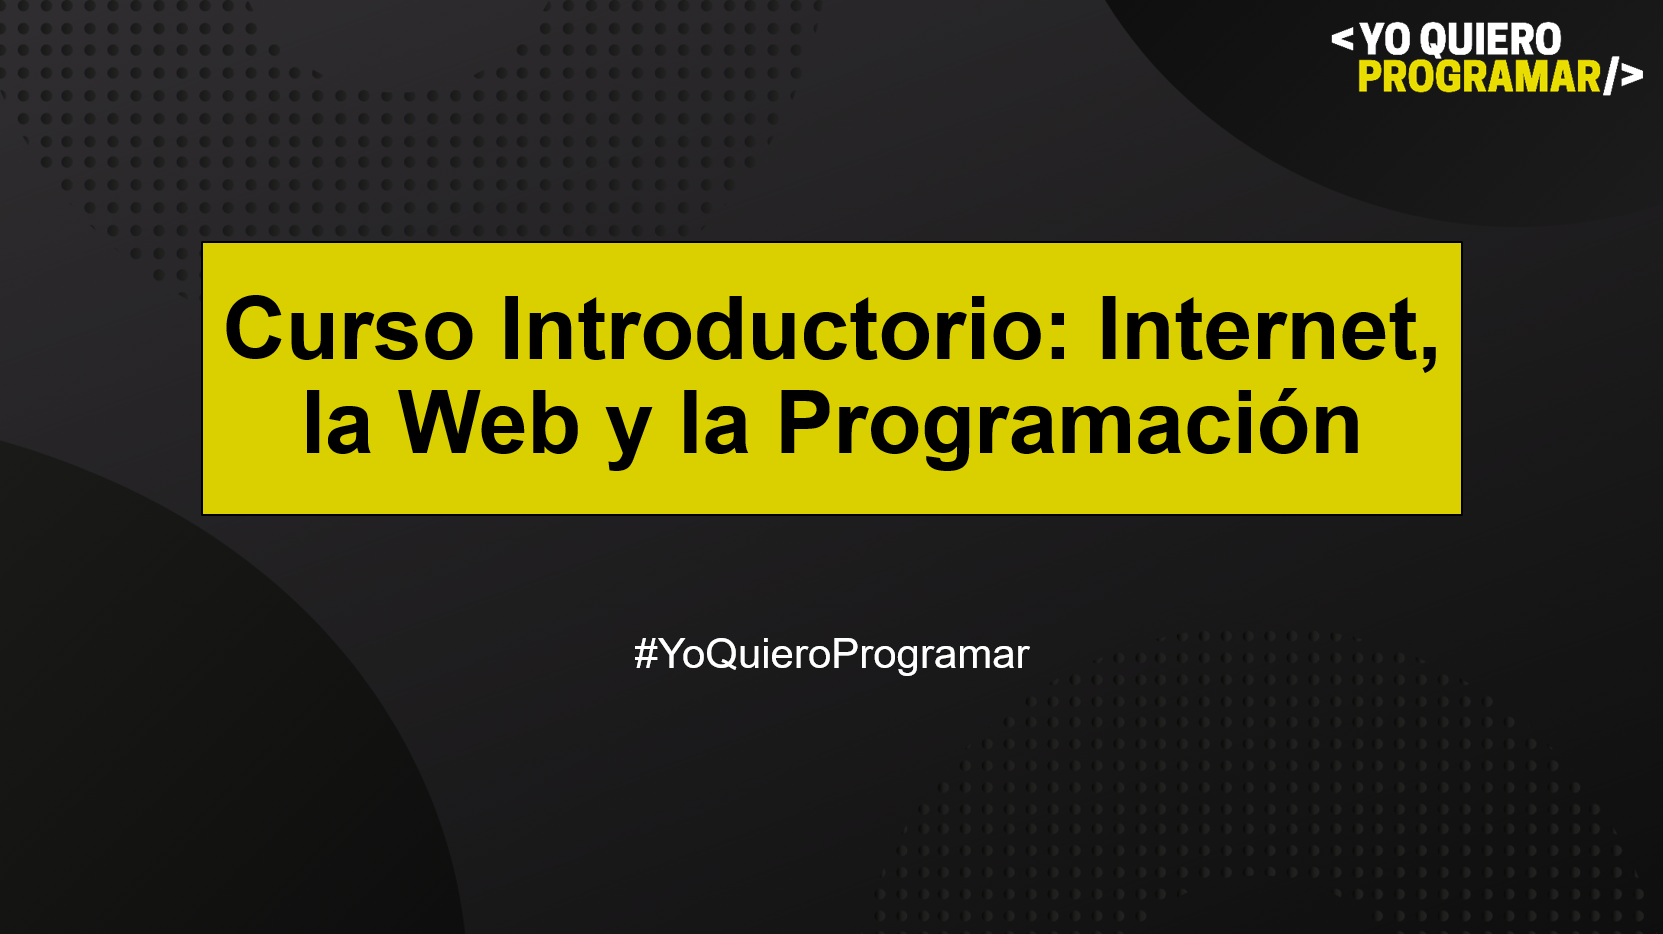 Curso Introductorio #YoQuieroProgramar